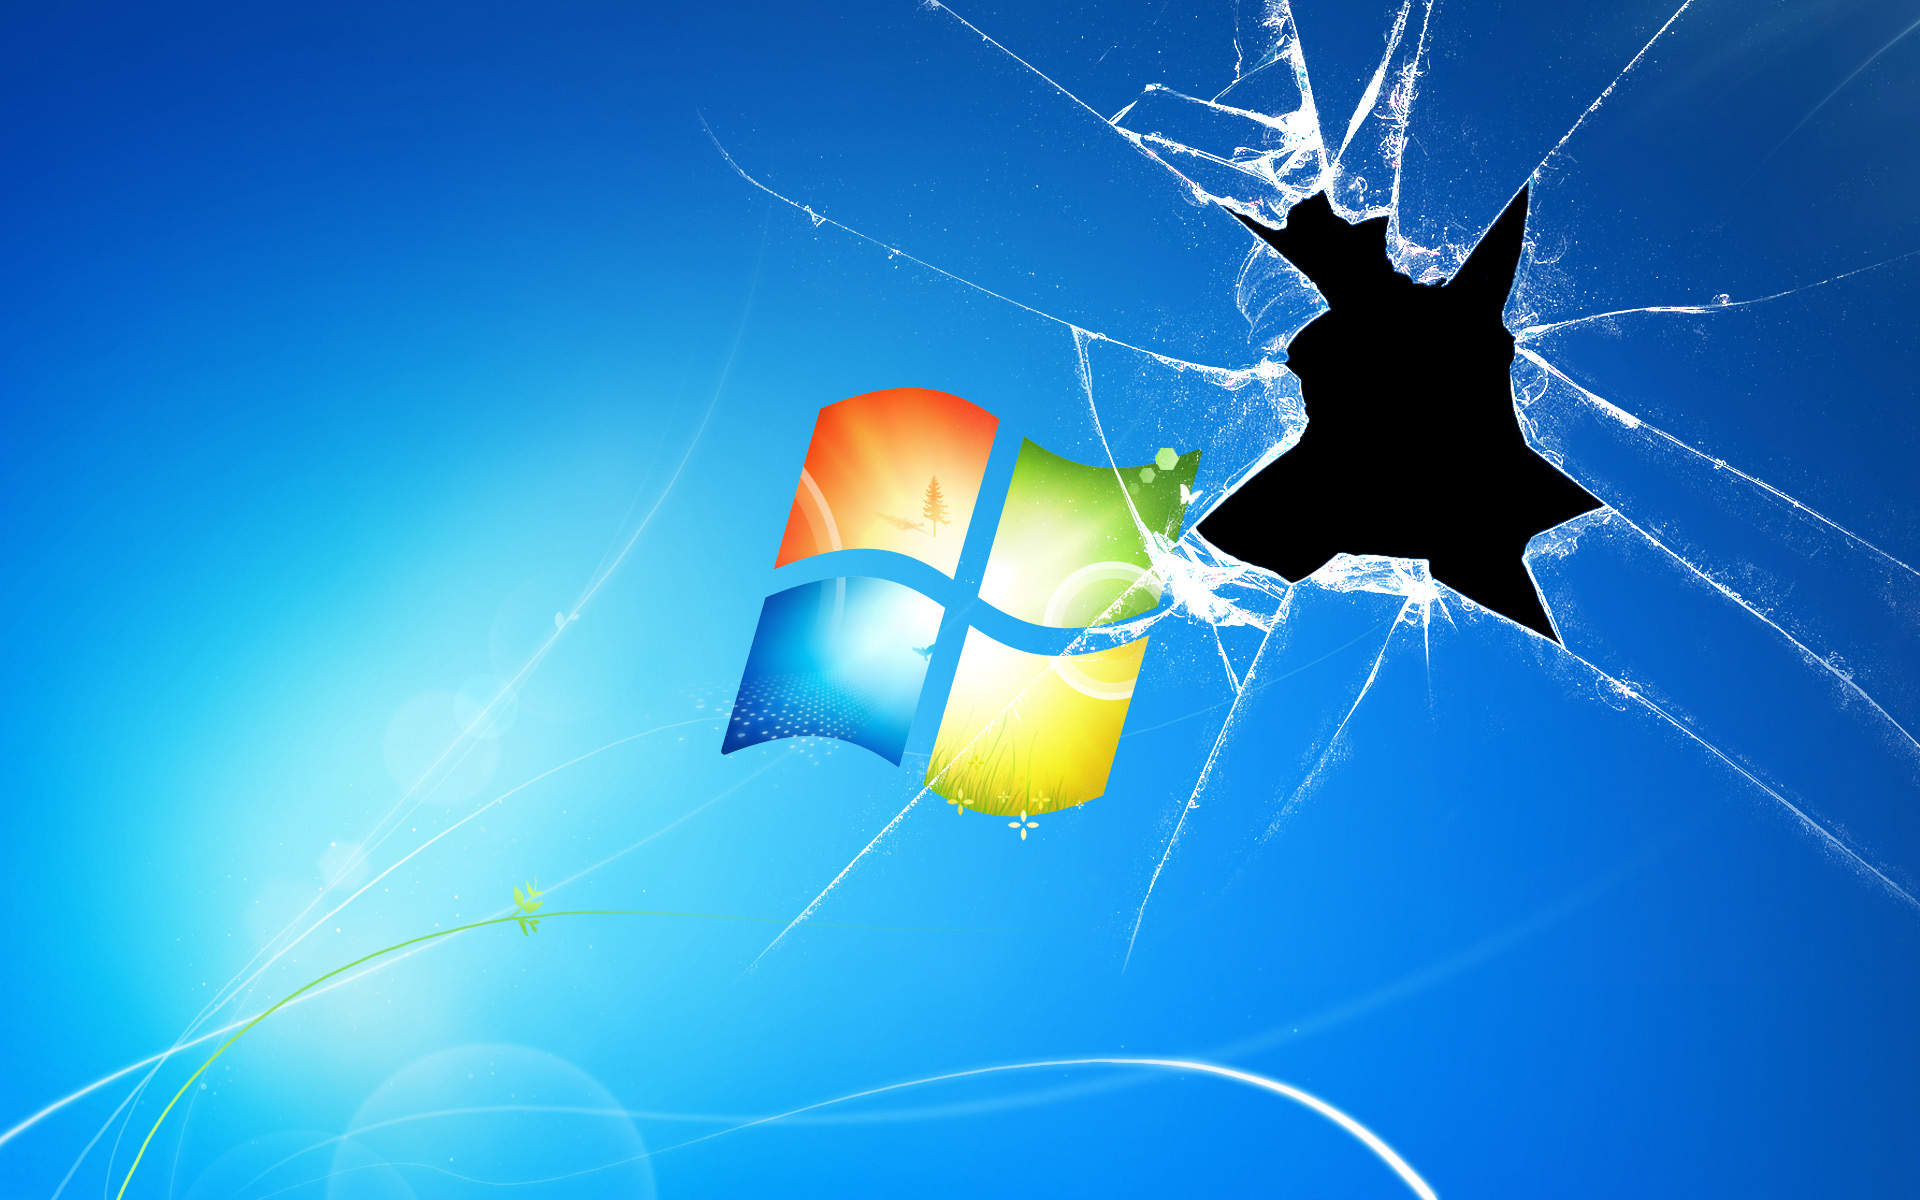 Broken screen over a Windows logo wallpaper